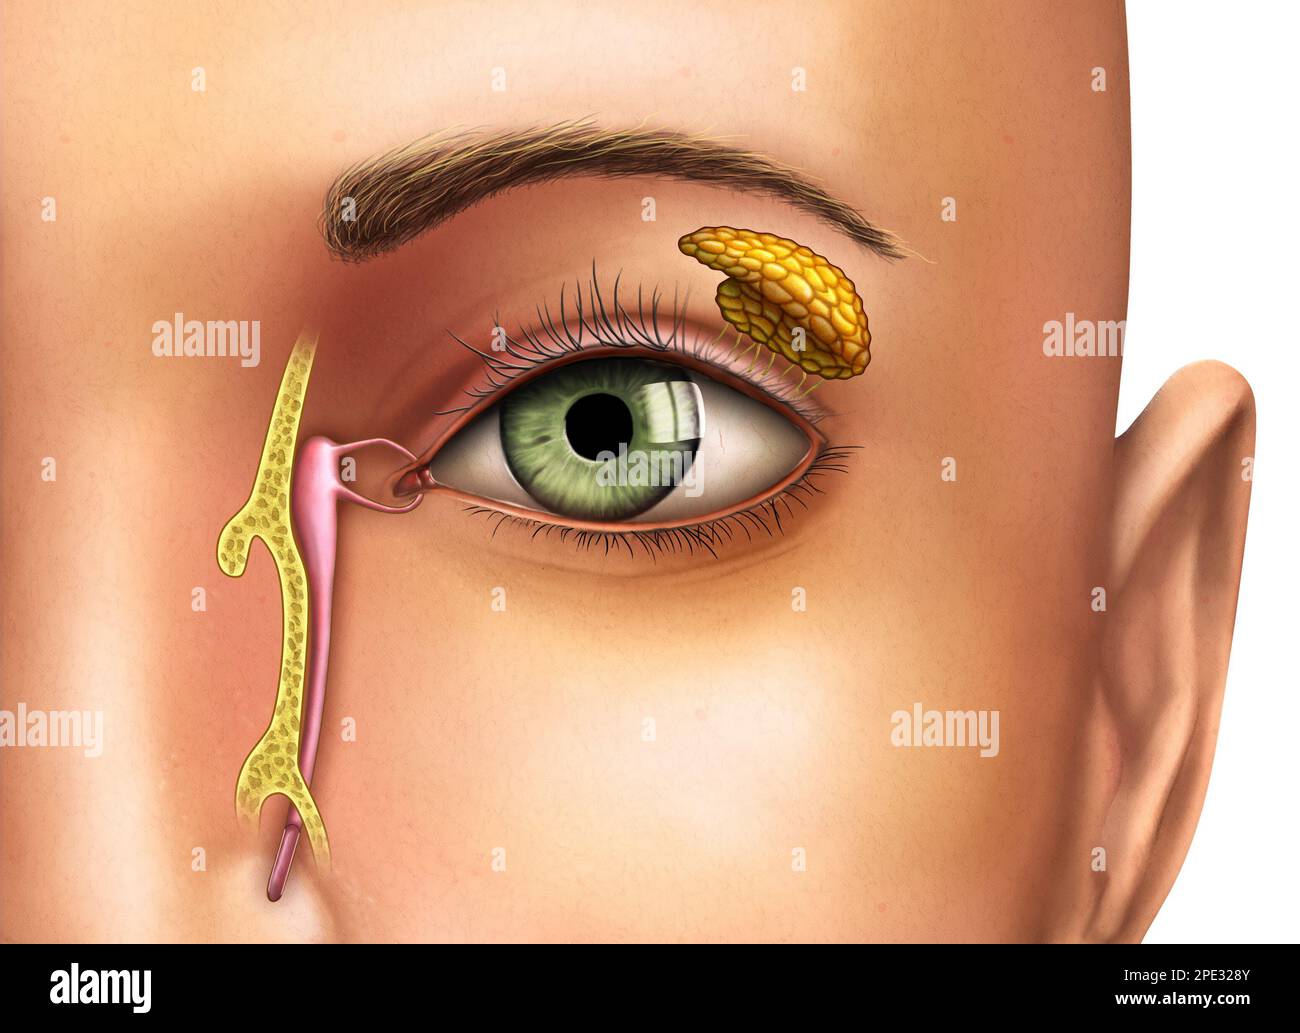 Disegno anatomico che mostra il funzionamento delle ghiandole lacrimali. Illustrazione digitale. Foto Stock